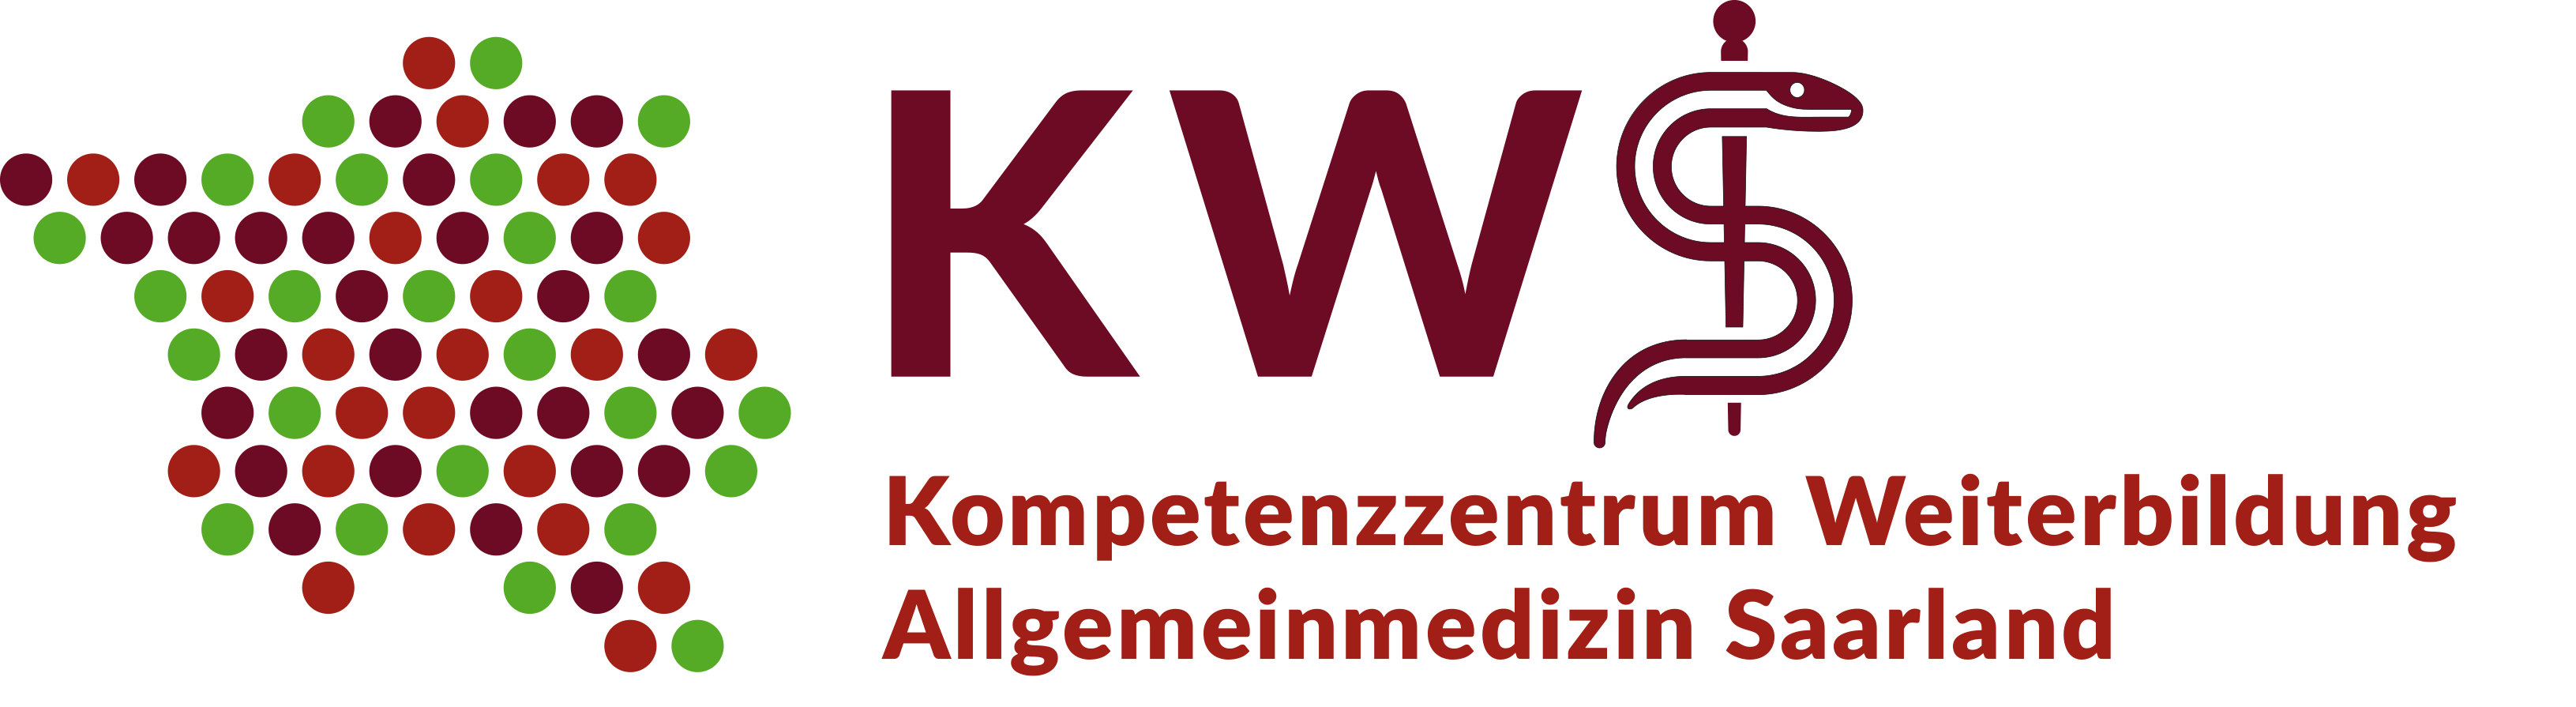 Logo des KWS - Kompetenzzentrum Weiterbildung Allgemeinmedizin Saarland